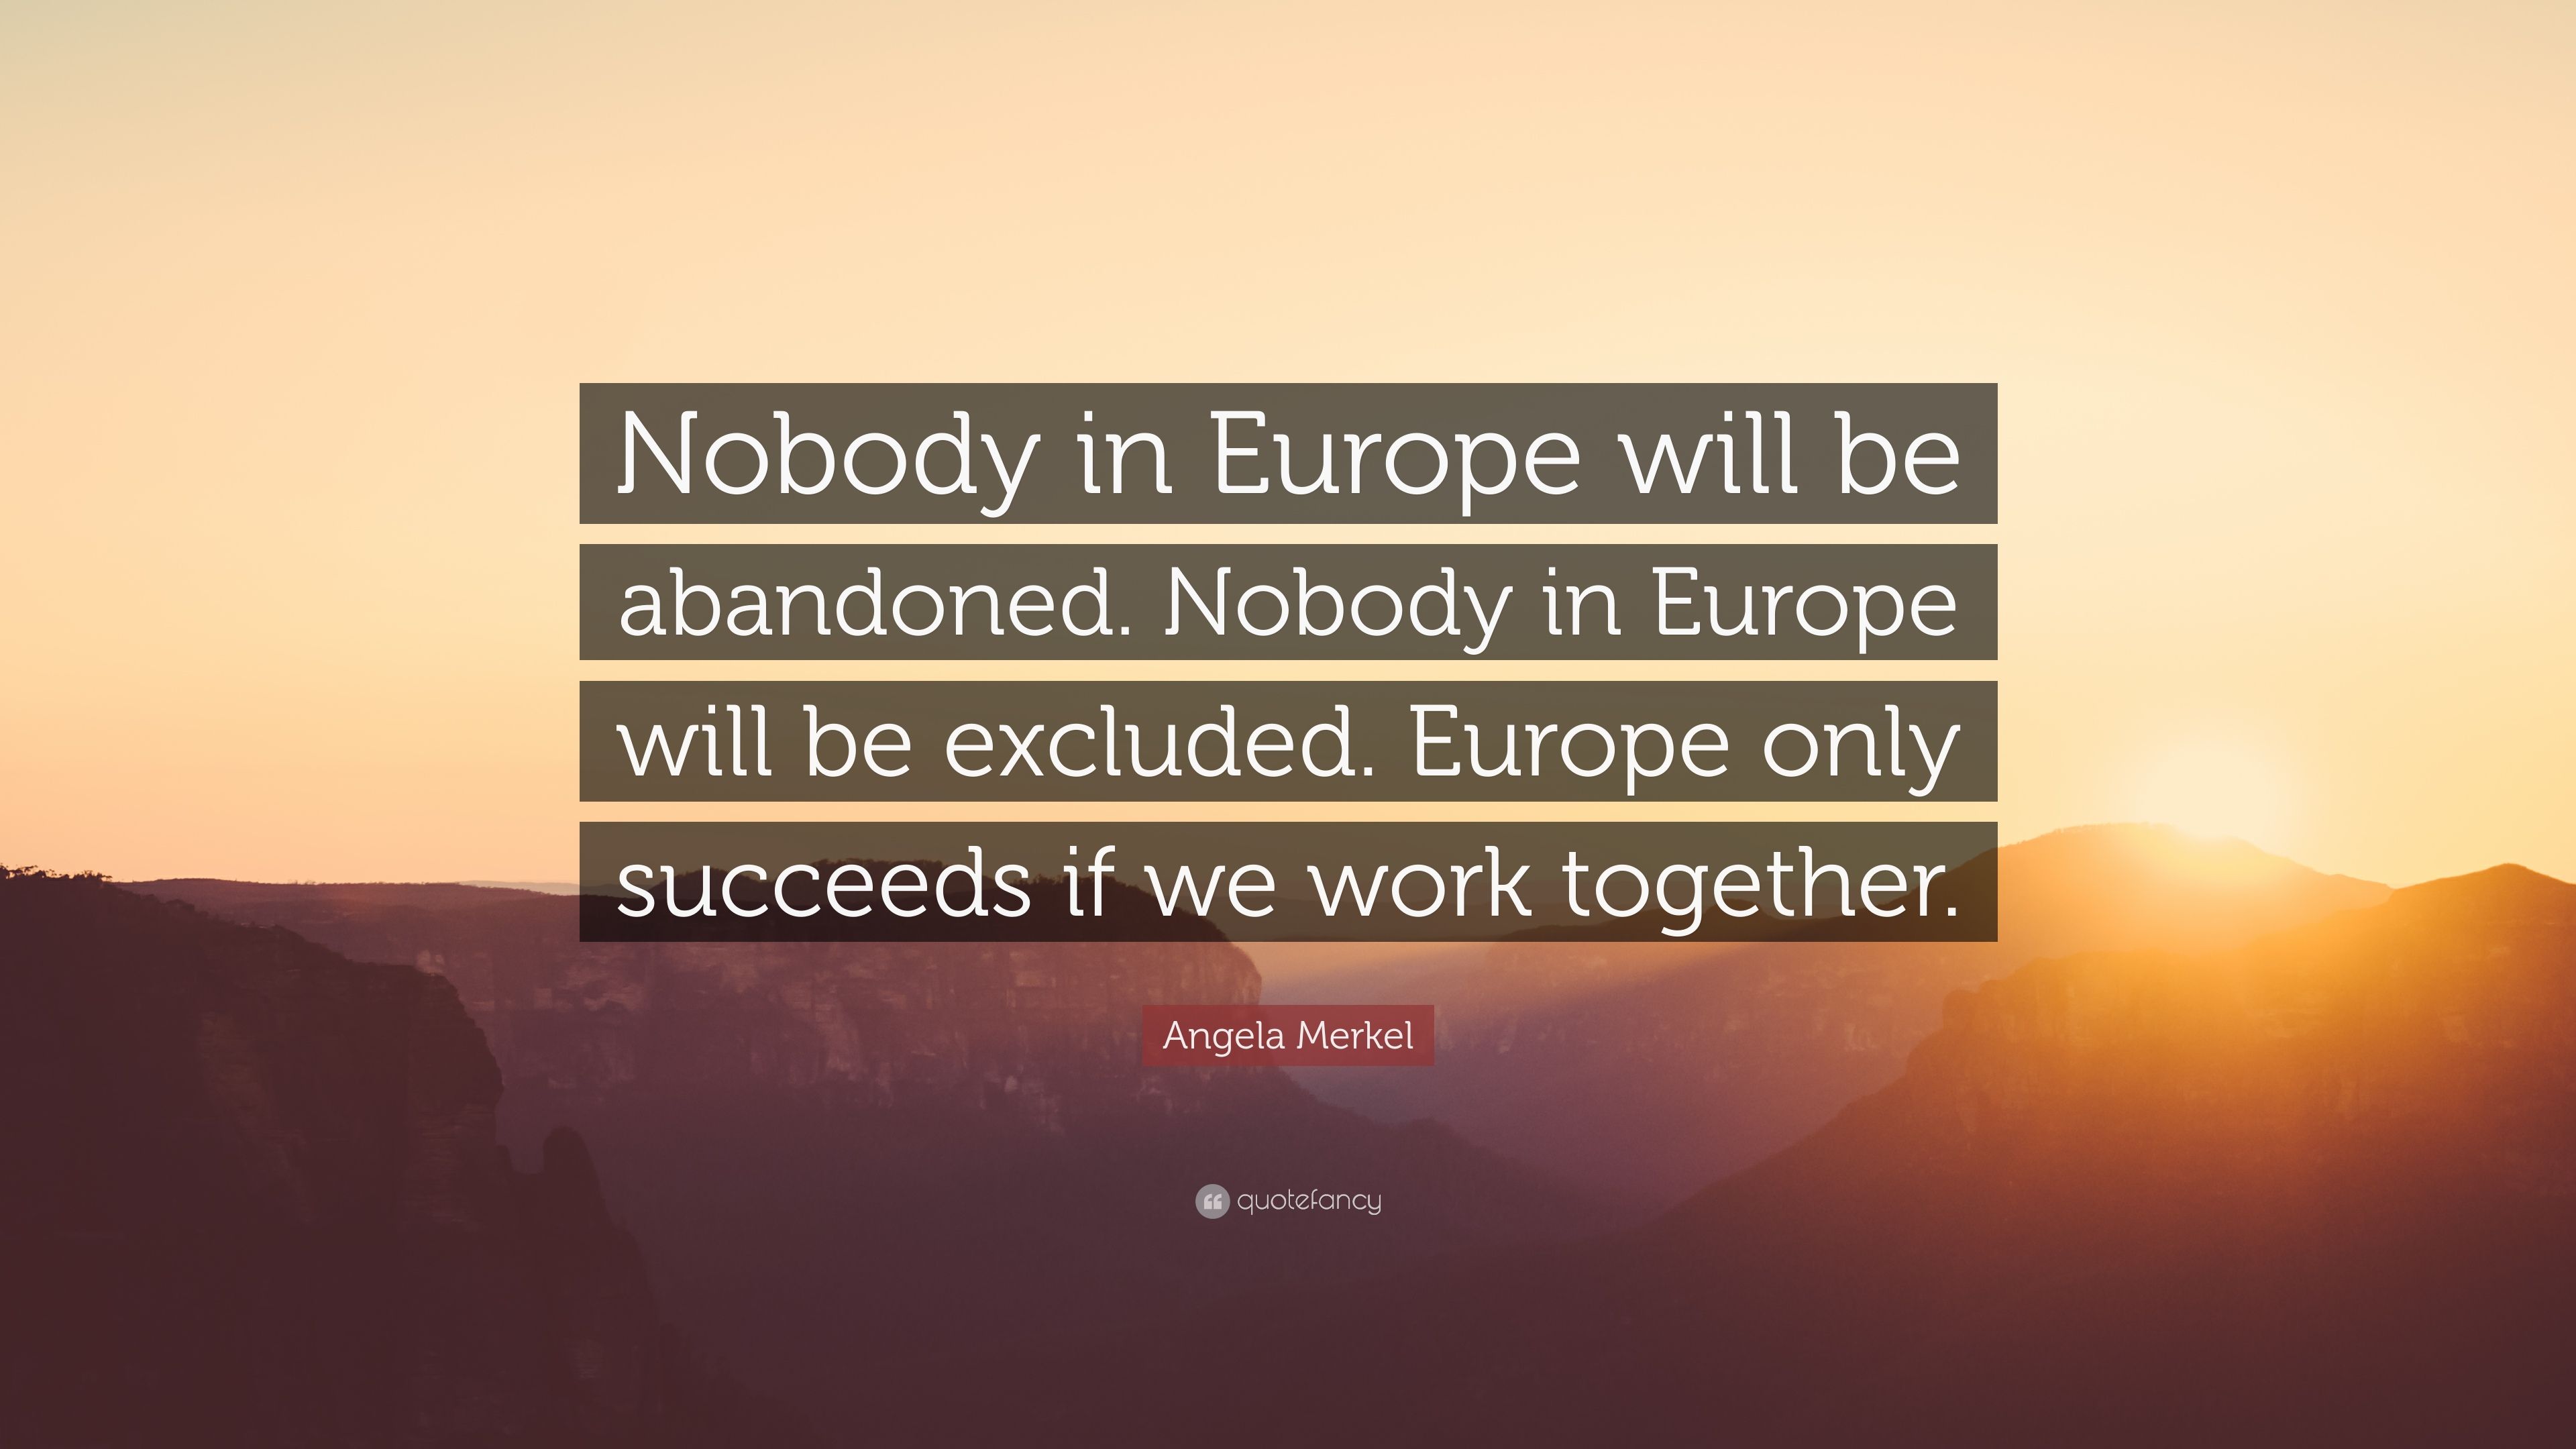 Angela Merkel Quote: “Nobody in Europe will be abandoned. Nobody